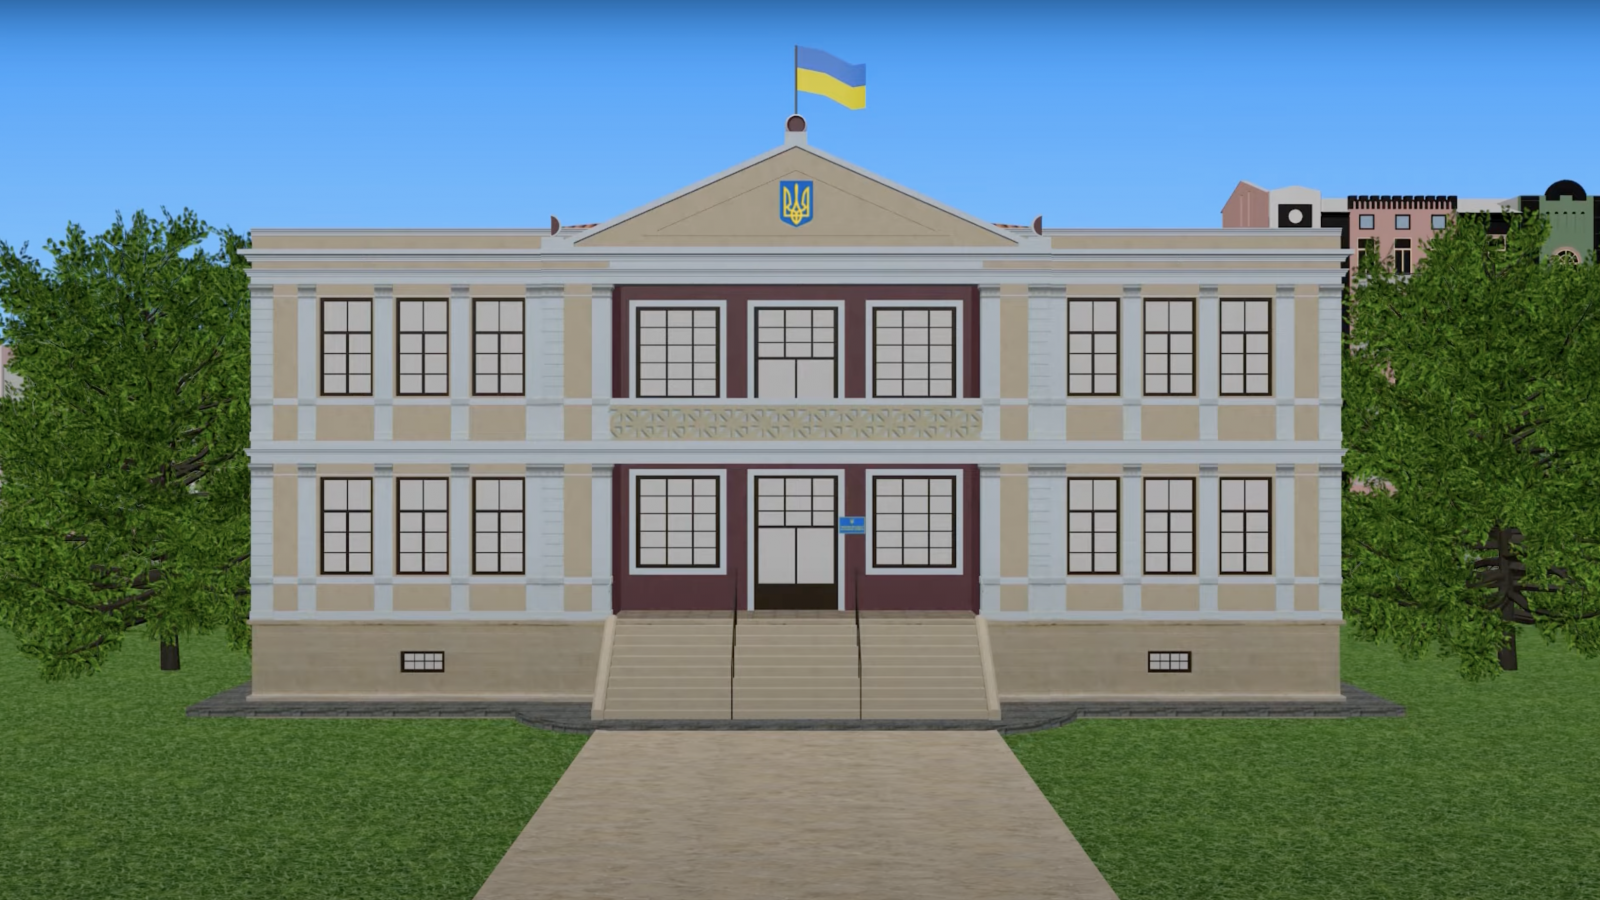 rus: Низькополігональна модель будинку із прапором україни на даху.